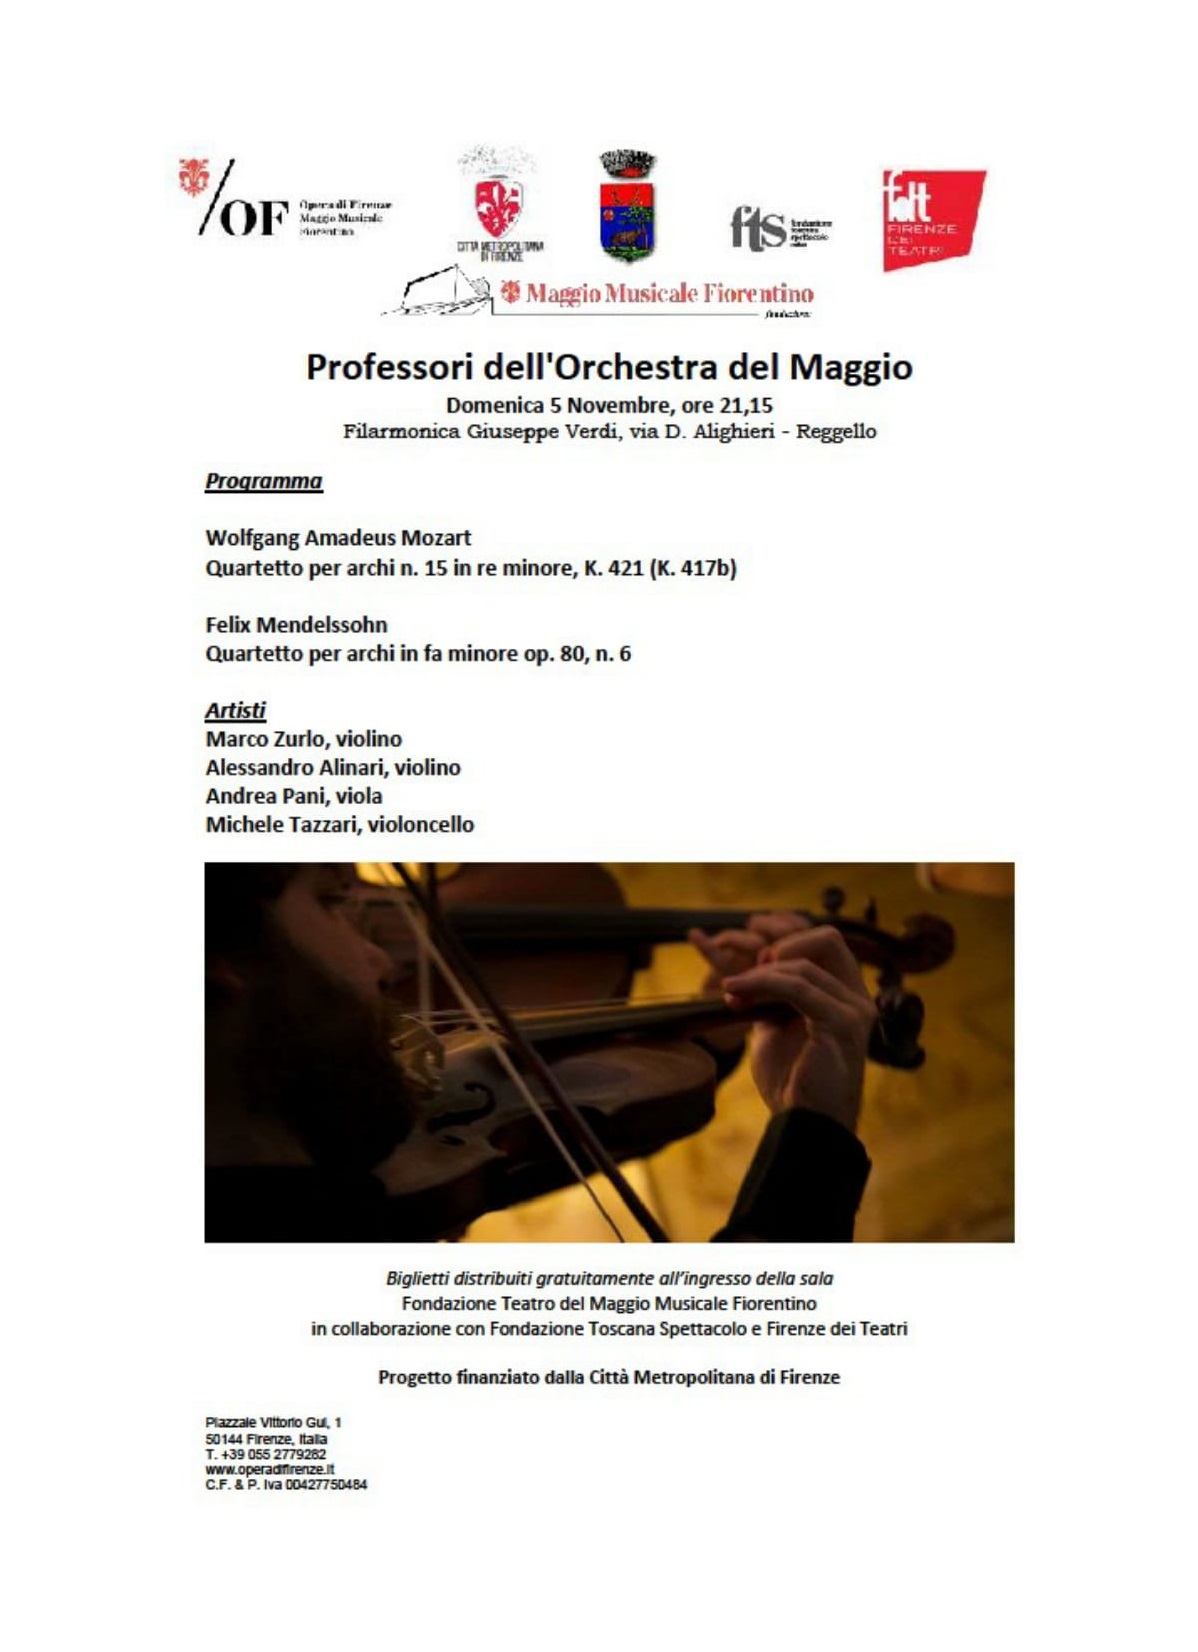 Maggio Musicale Fiorentino – “Professori dell’orchestra del Maggio”